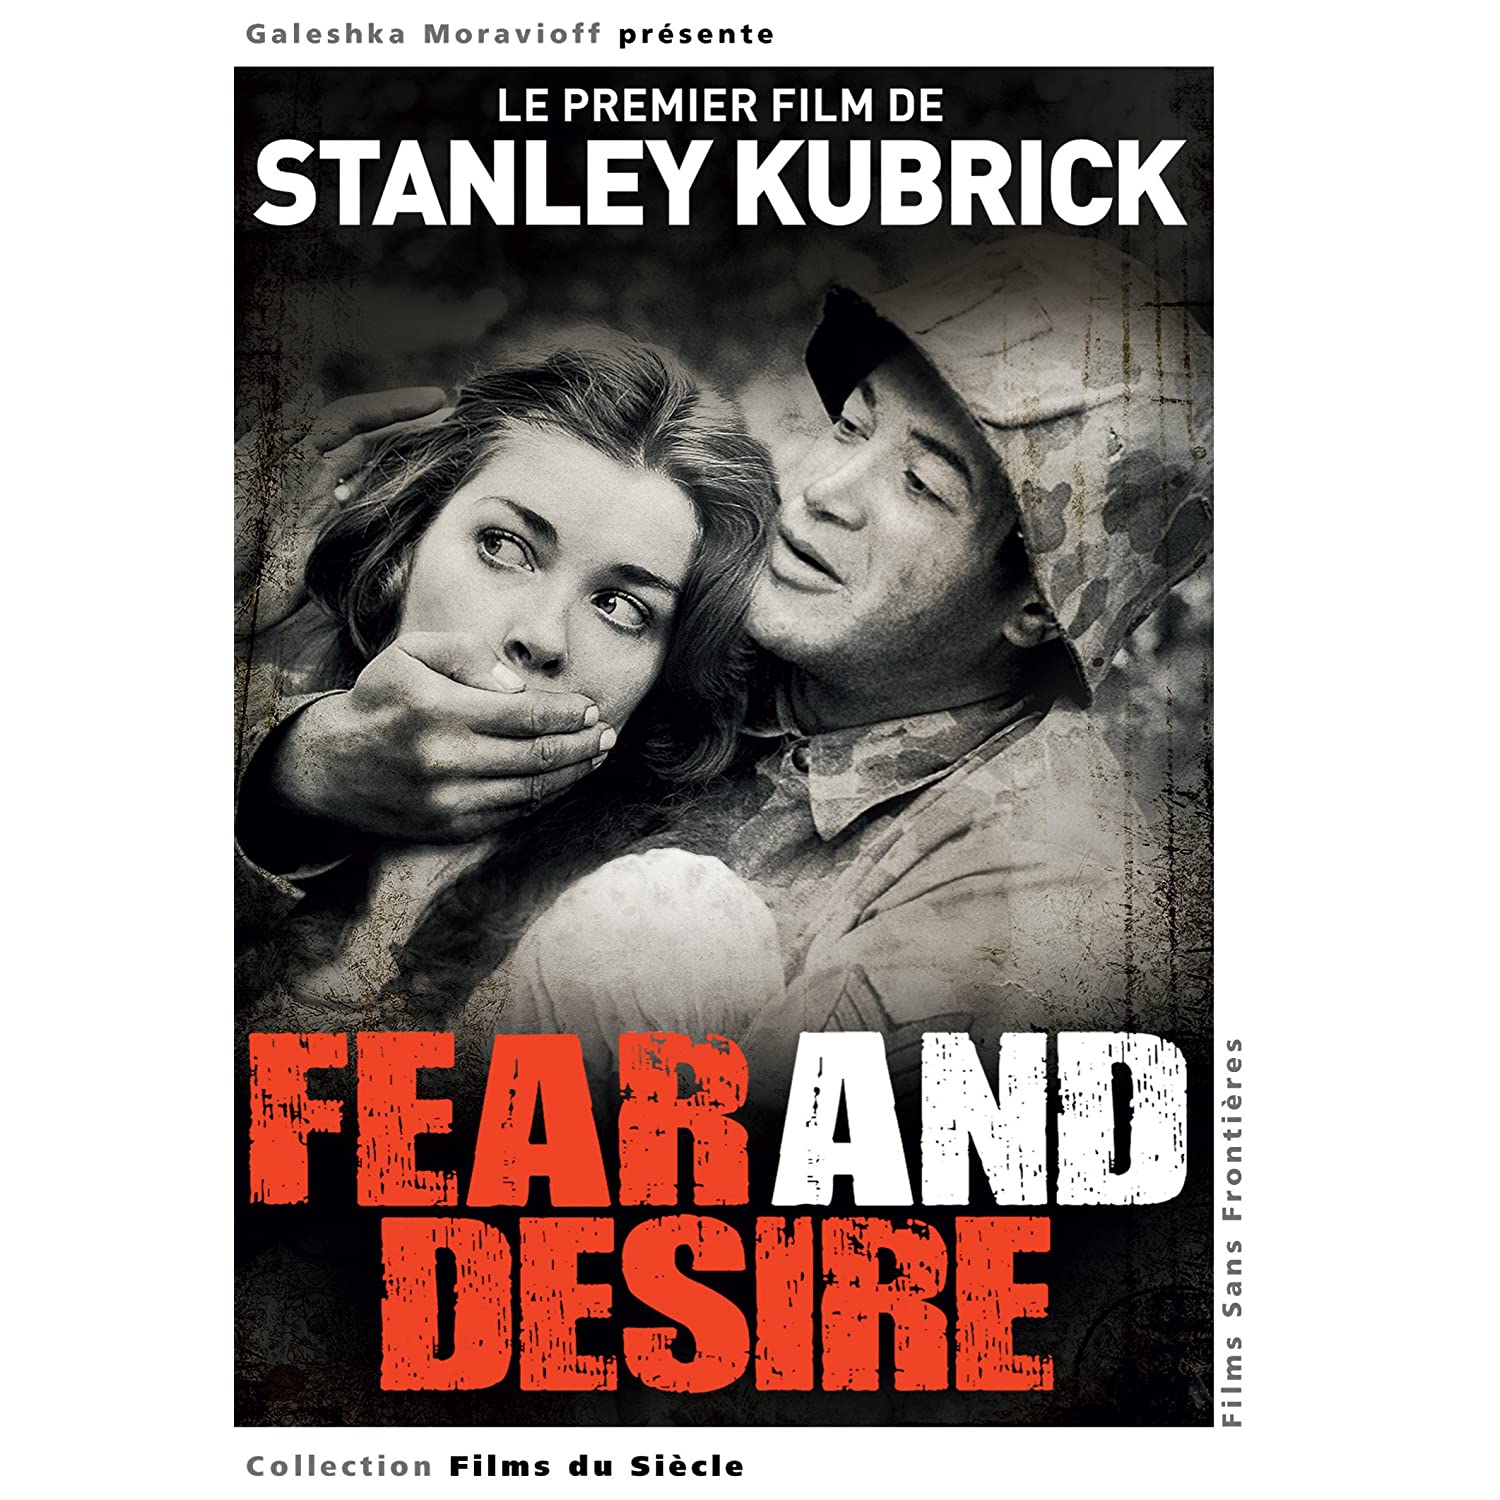 [Cinéma] Quel est votre Kubrick préféré? - Page 7 91ZSrO2aRmL._AA1500_